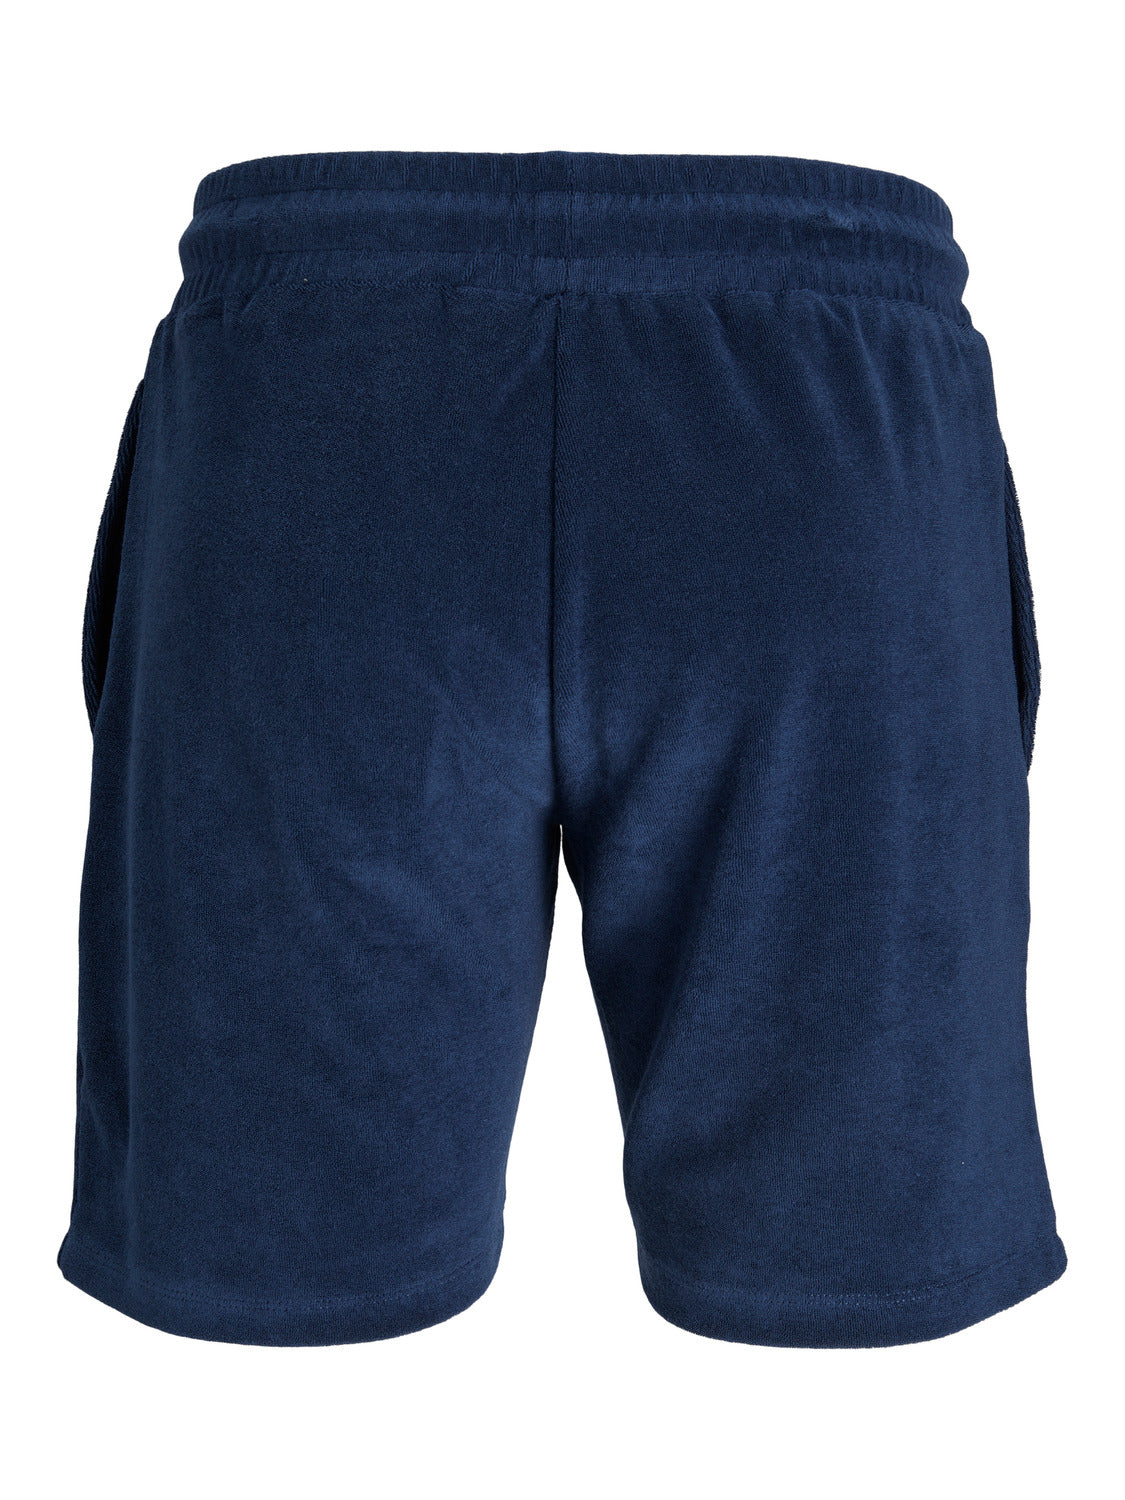 JPRBLA Shorts - Navy Blazer